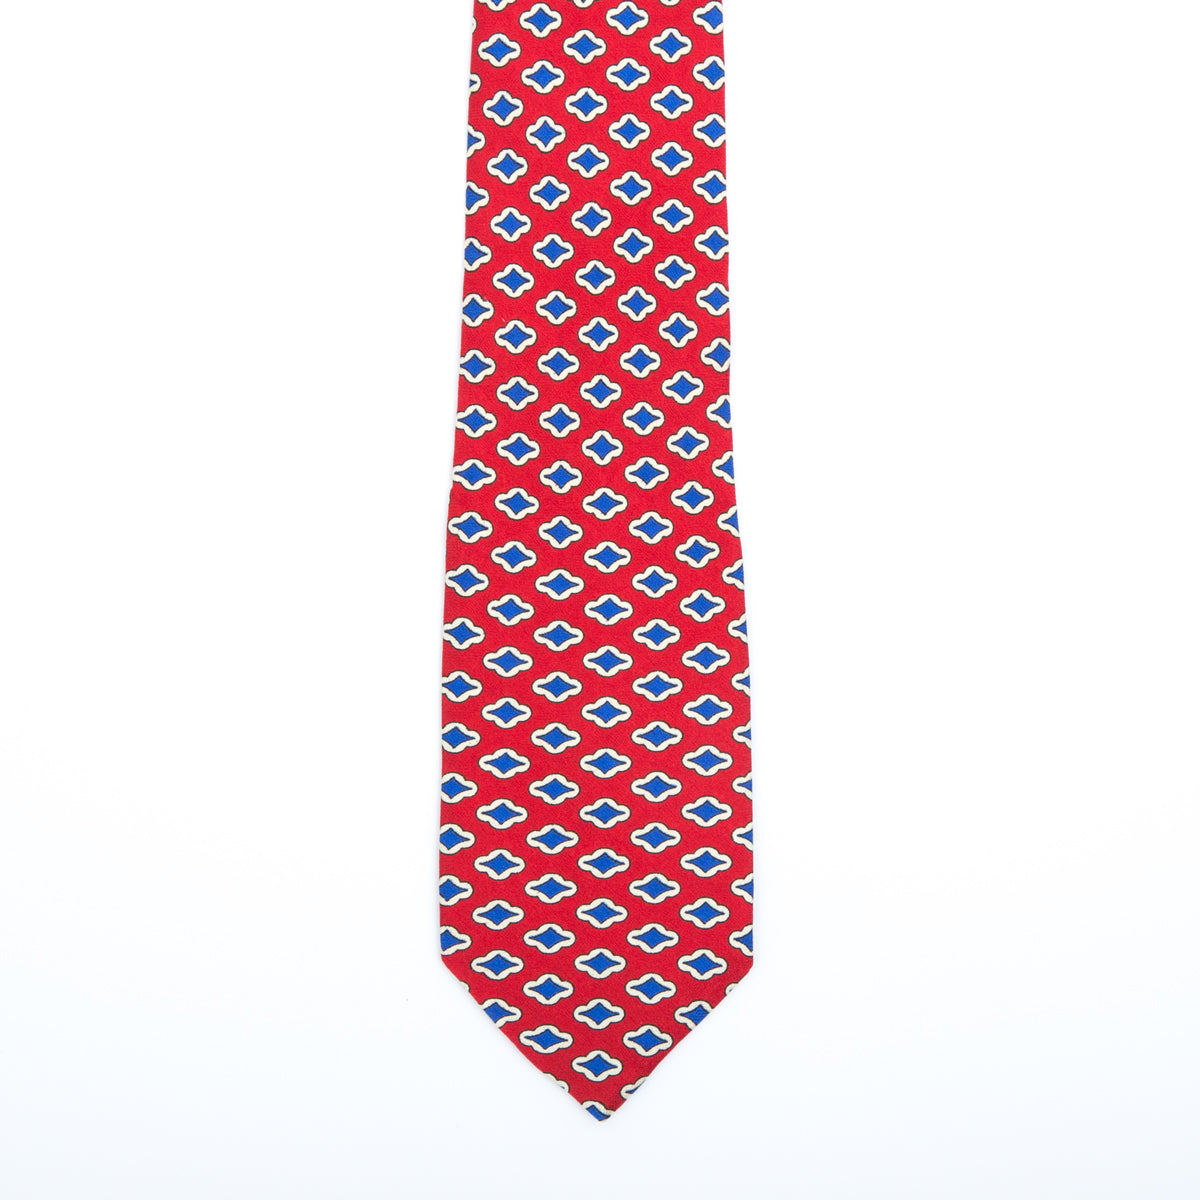 Persian red fantasy tie